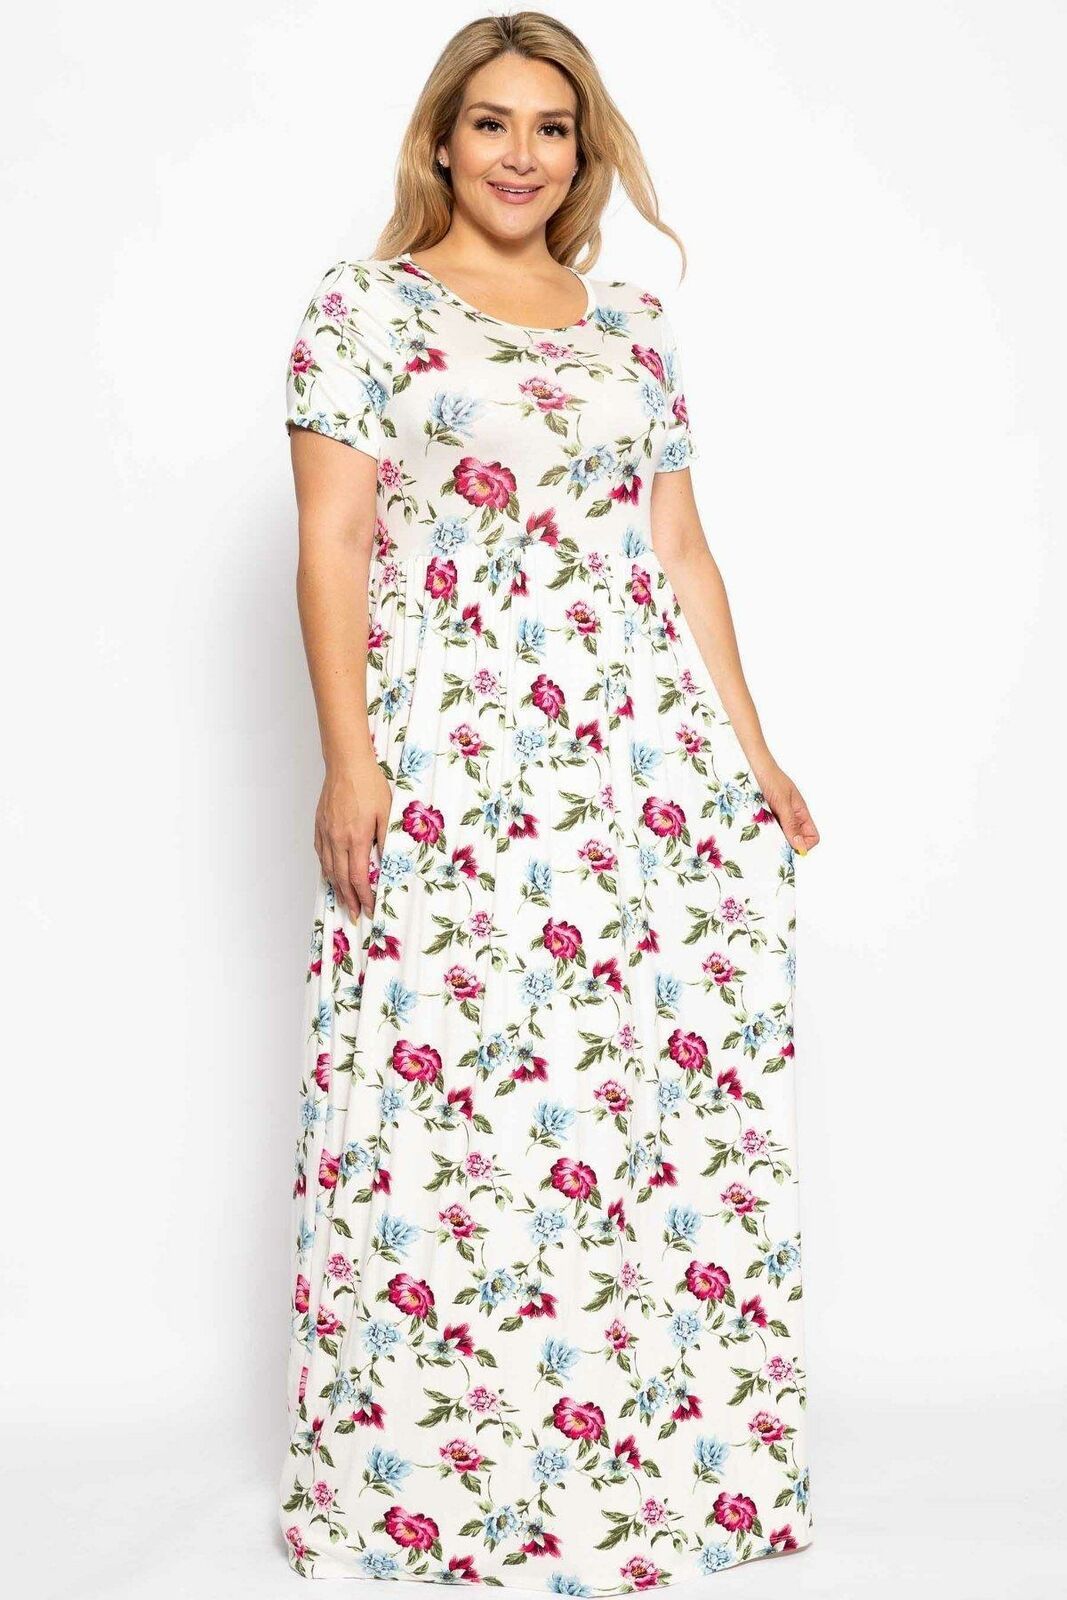 Women's Plus Size Adorable Summer Maxi Dress - Dresses